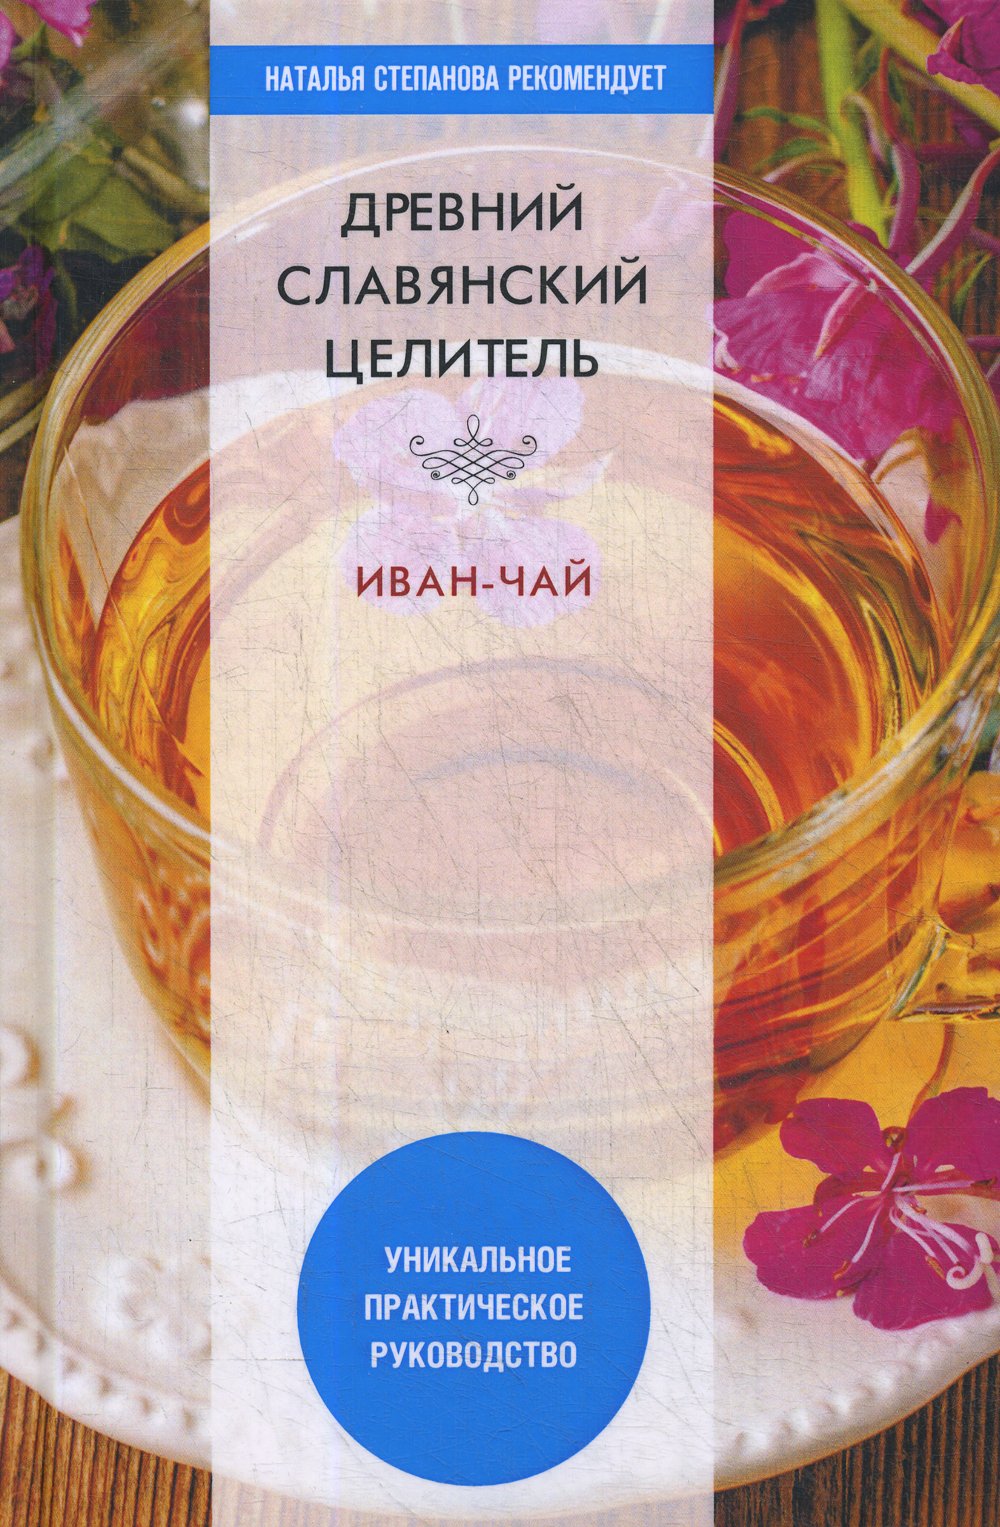 Зайцев В. - Древний славянский целитель иван-чай